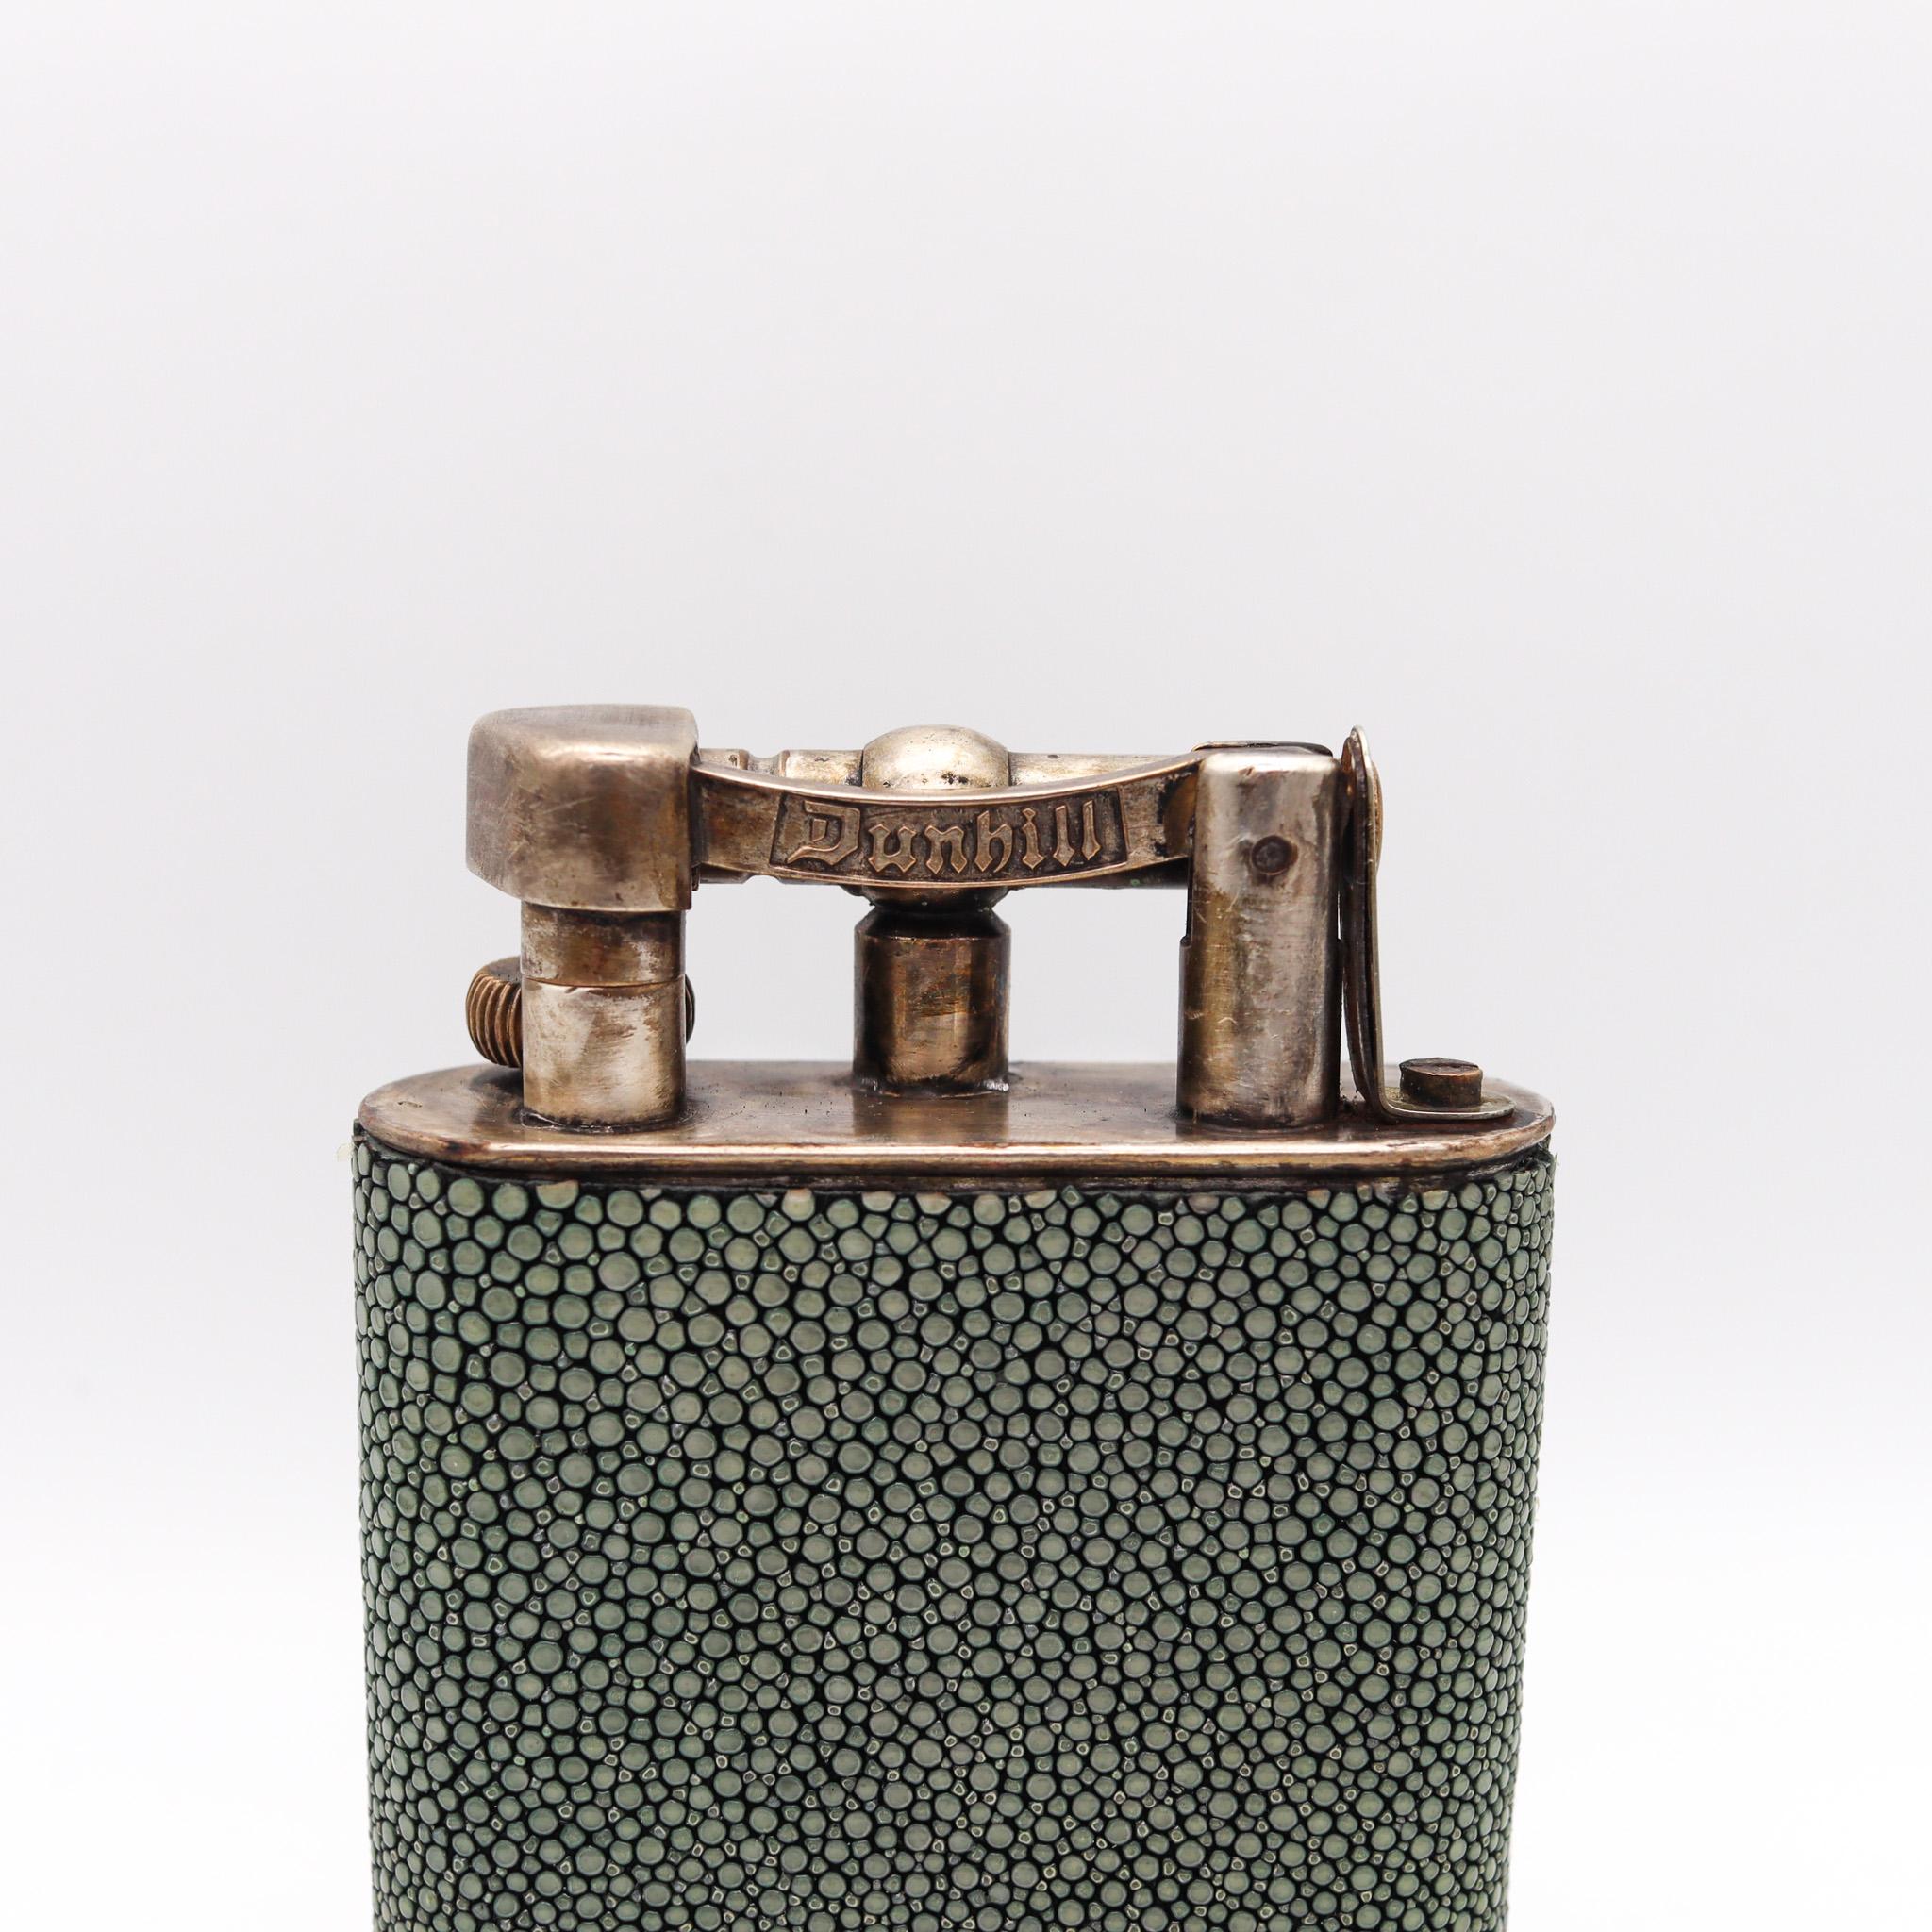 Einzigartiges Benzinfeuerzeug, entworfen von Dunhill.

Schöner und eleganter Tisch mit Hubarm und Benzinfeuerzeug, entworfen von der Alfred Dunhill Company in der Nachkriegszeit, ca. 1940-1950. Dieses kultige Benzinfeuerzeug wurde aus massivem